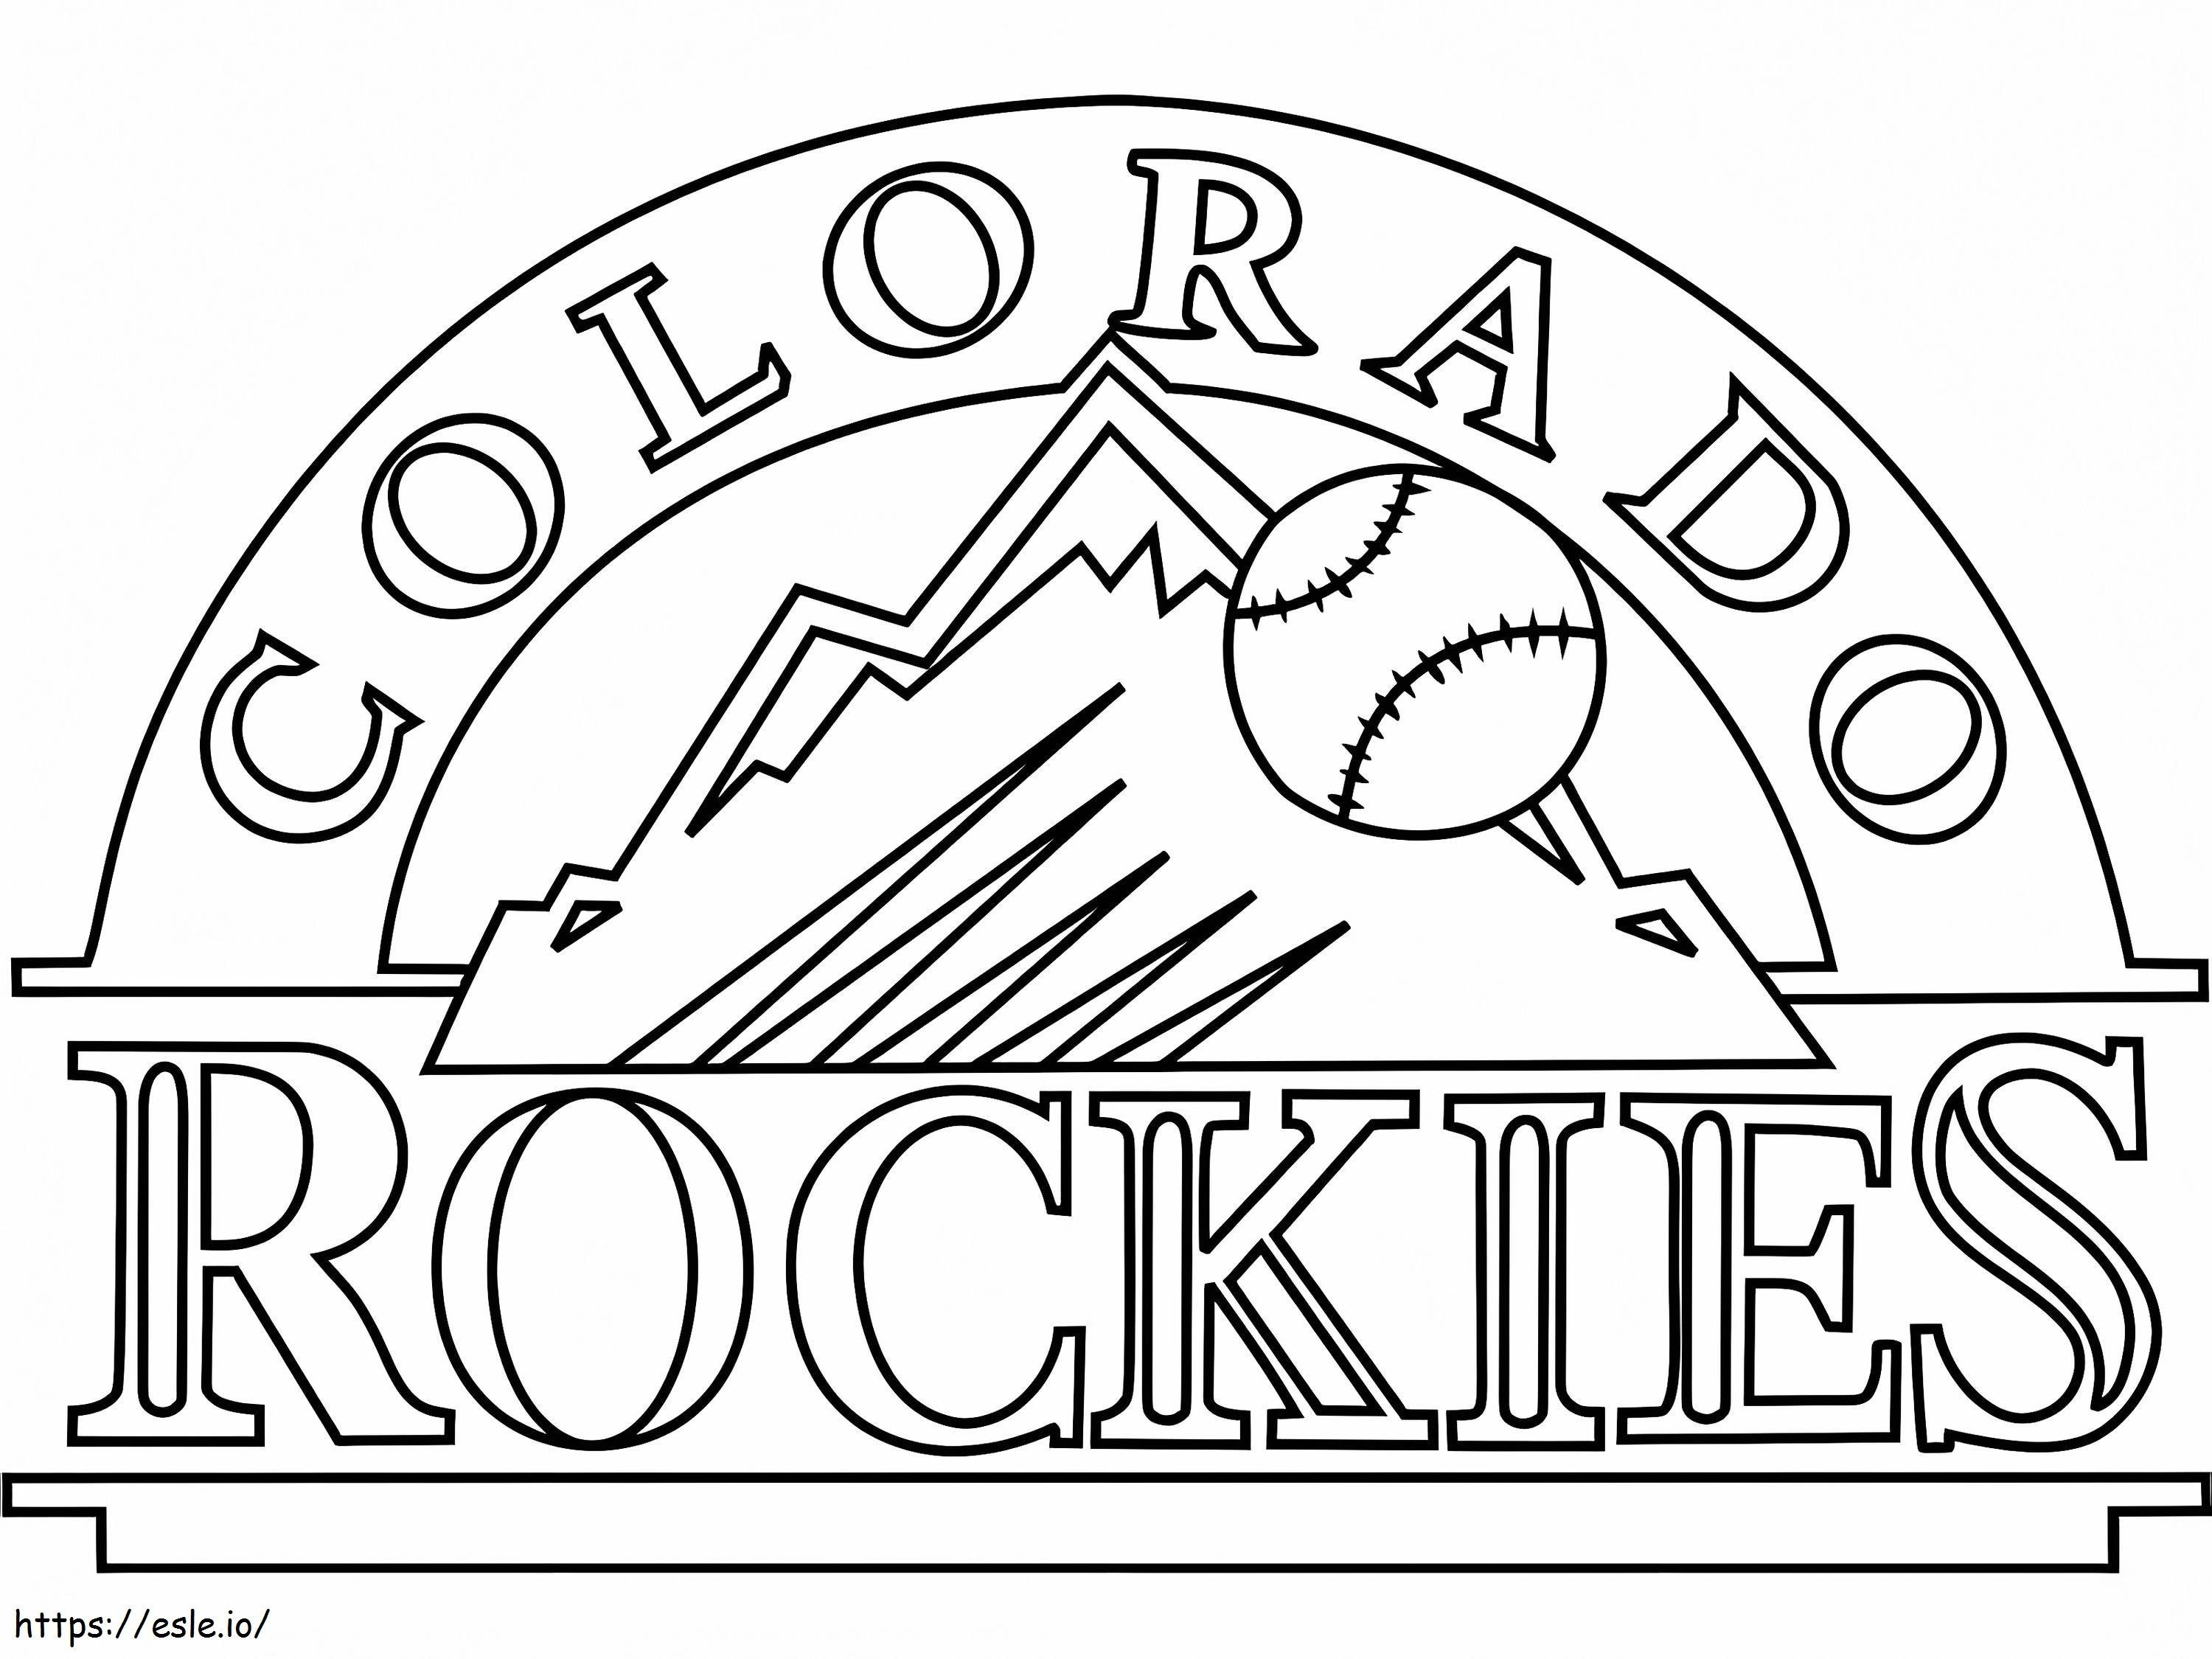 Colorado Rockies-logo kleurplaat kleurplaat